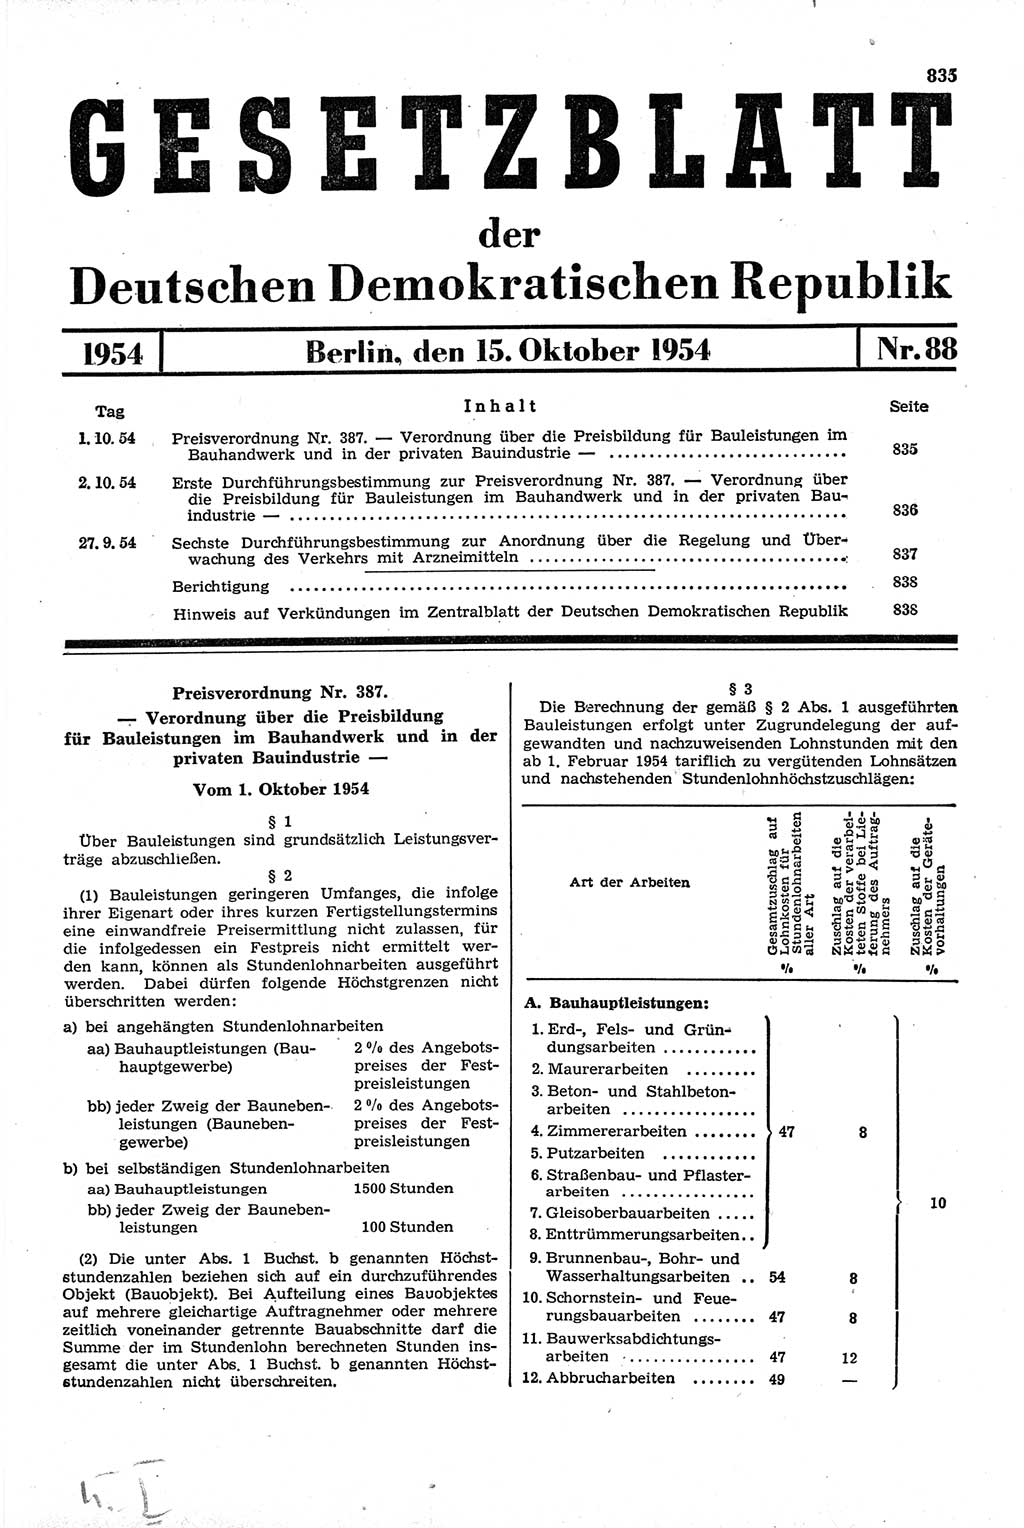 Gesetzblatt (GBl.) der Deutschen Demokratischen Republik (DDR) 1954, Seite 835 (GBl. DDR 1954, S. 835)